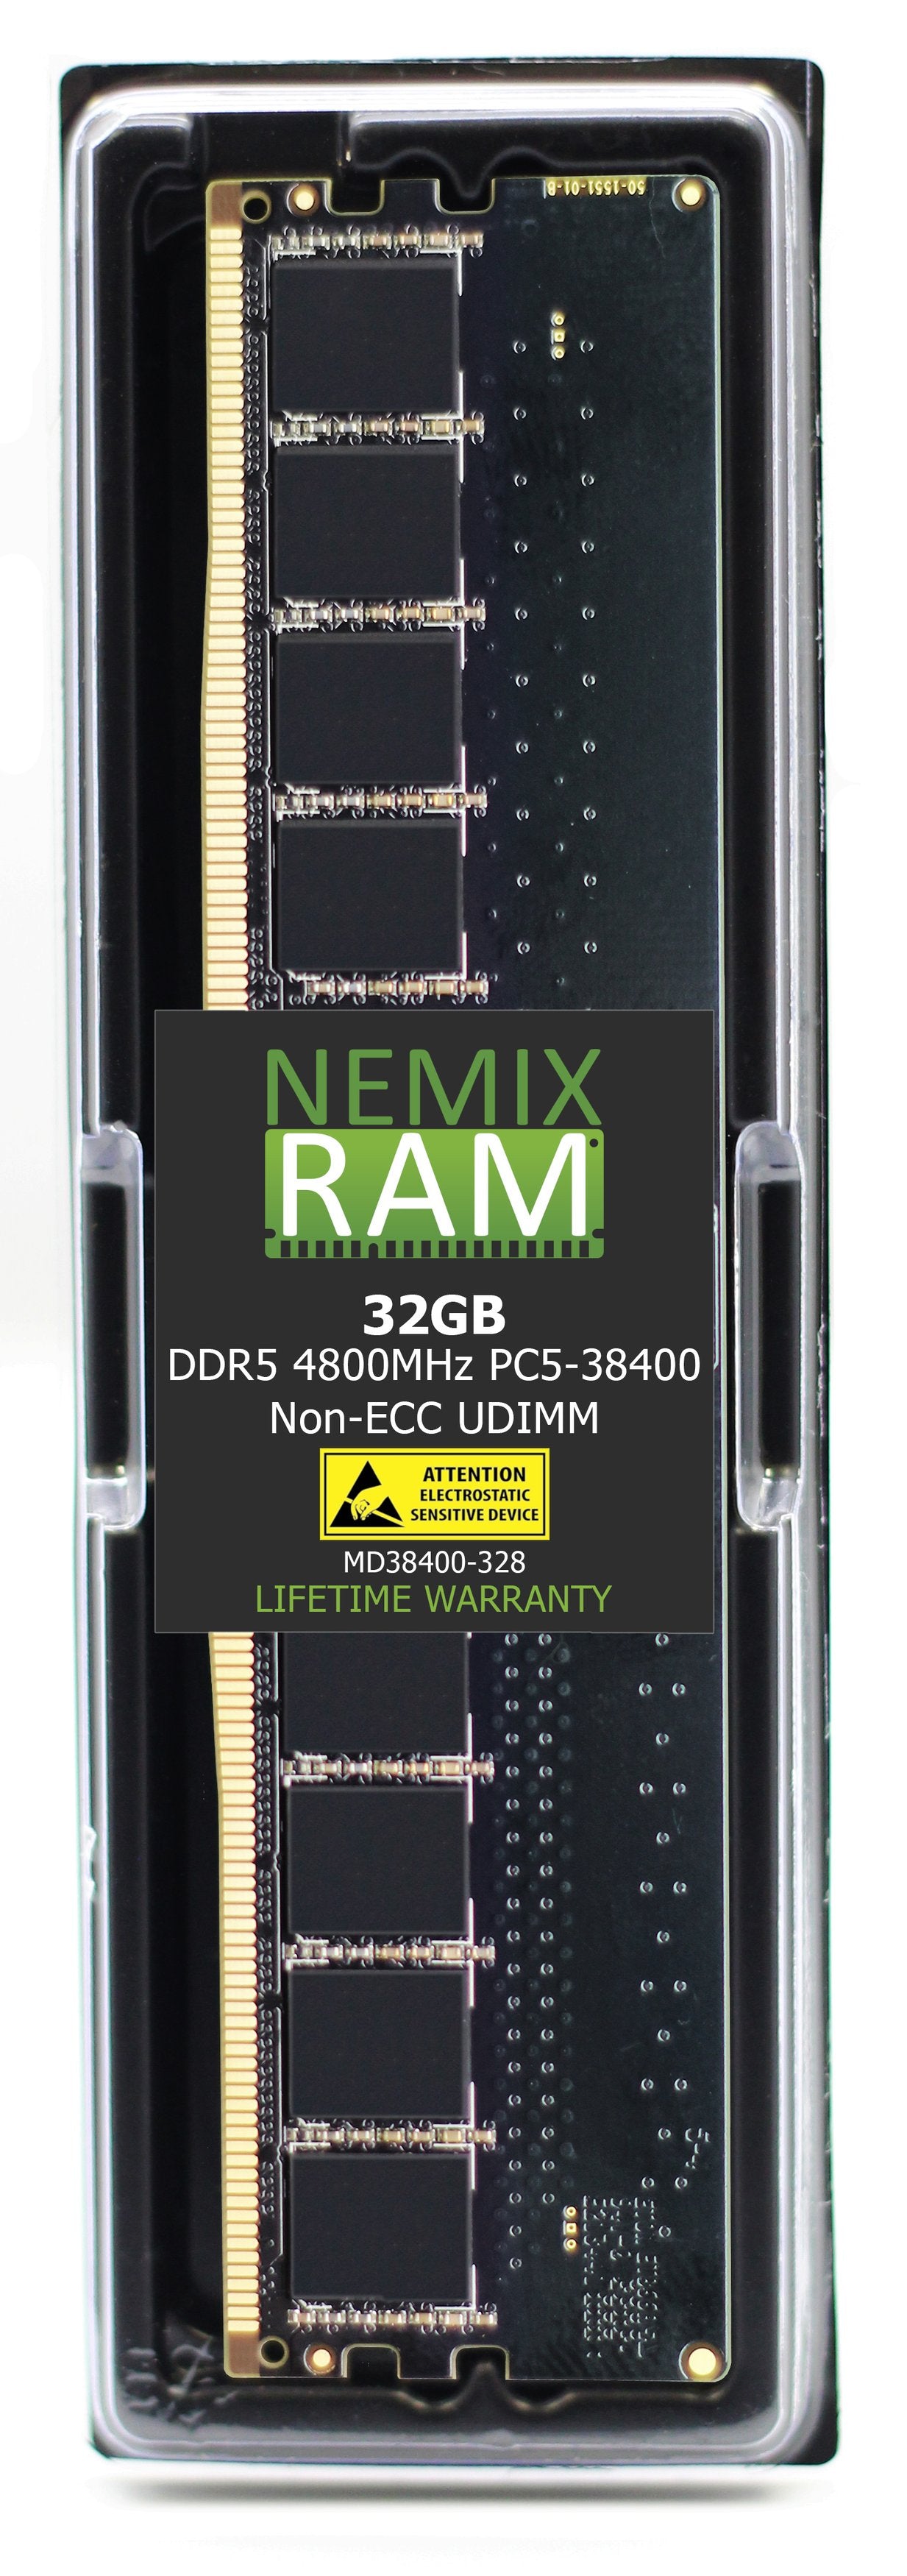 NEMIX RAM DDR5 4800MHZ PC5-38400 32GB 2Rx8 UDIMM Dell SNPWMMC0C/32G AB883075 Memory Alienware Aurora R13 R15 Optiplex 7000 7010 XE4 Precision Workstation 3660 3660XE XPS 8950 Compatible